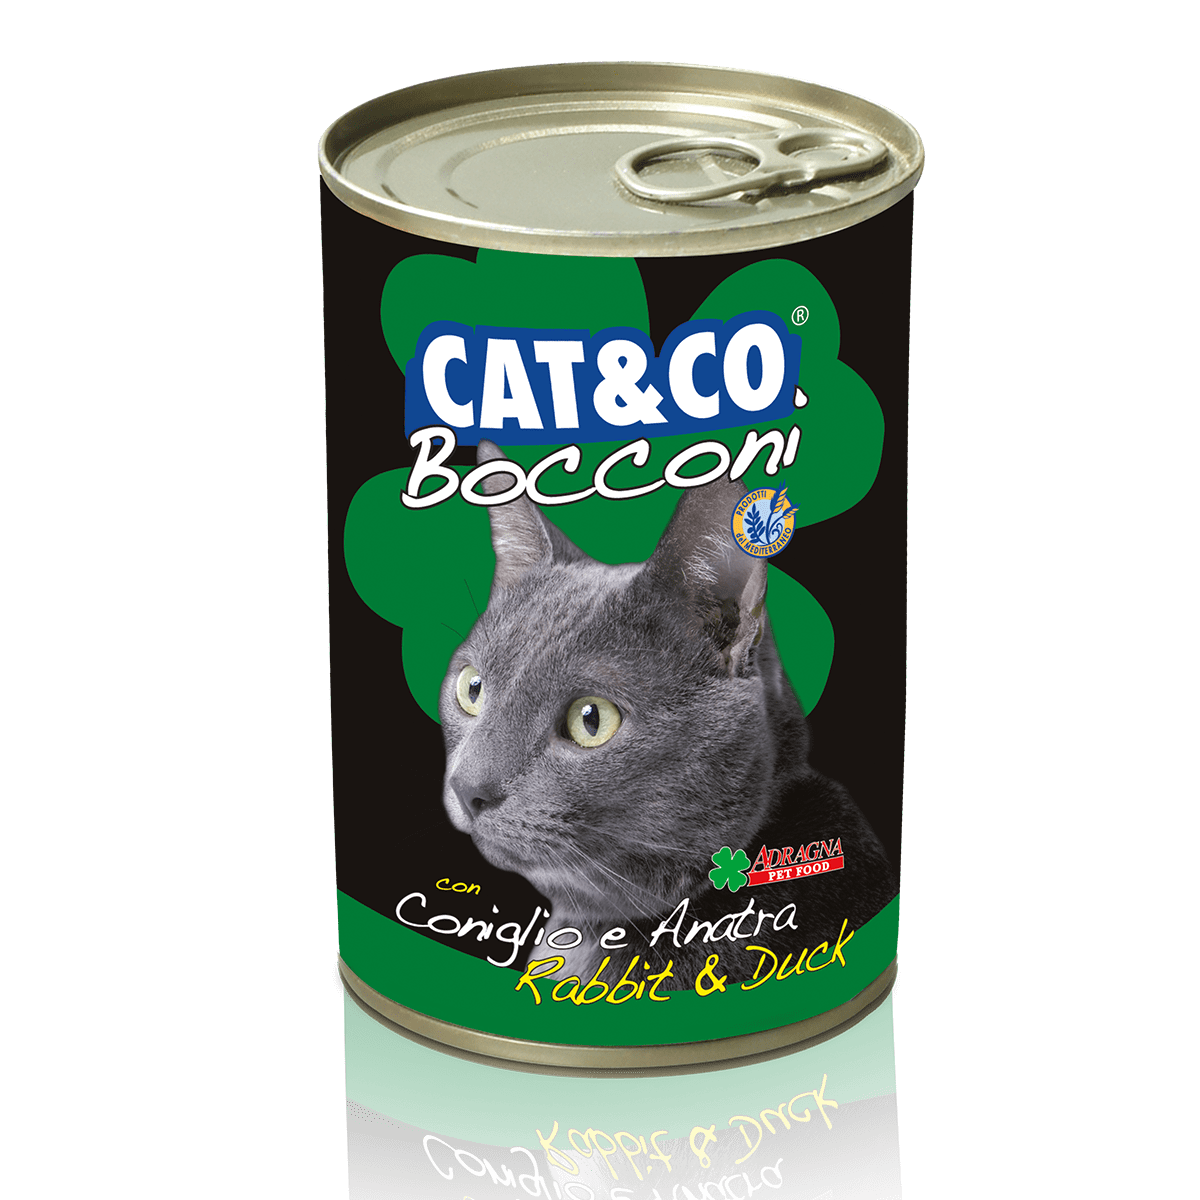 Cat&Co Bocconi Coniglio e anatra